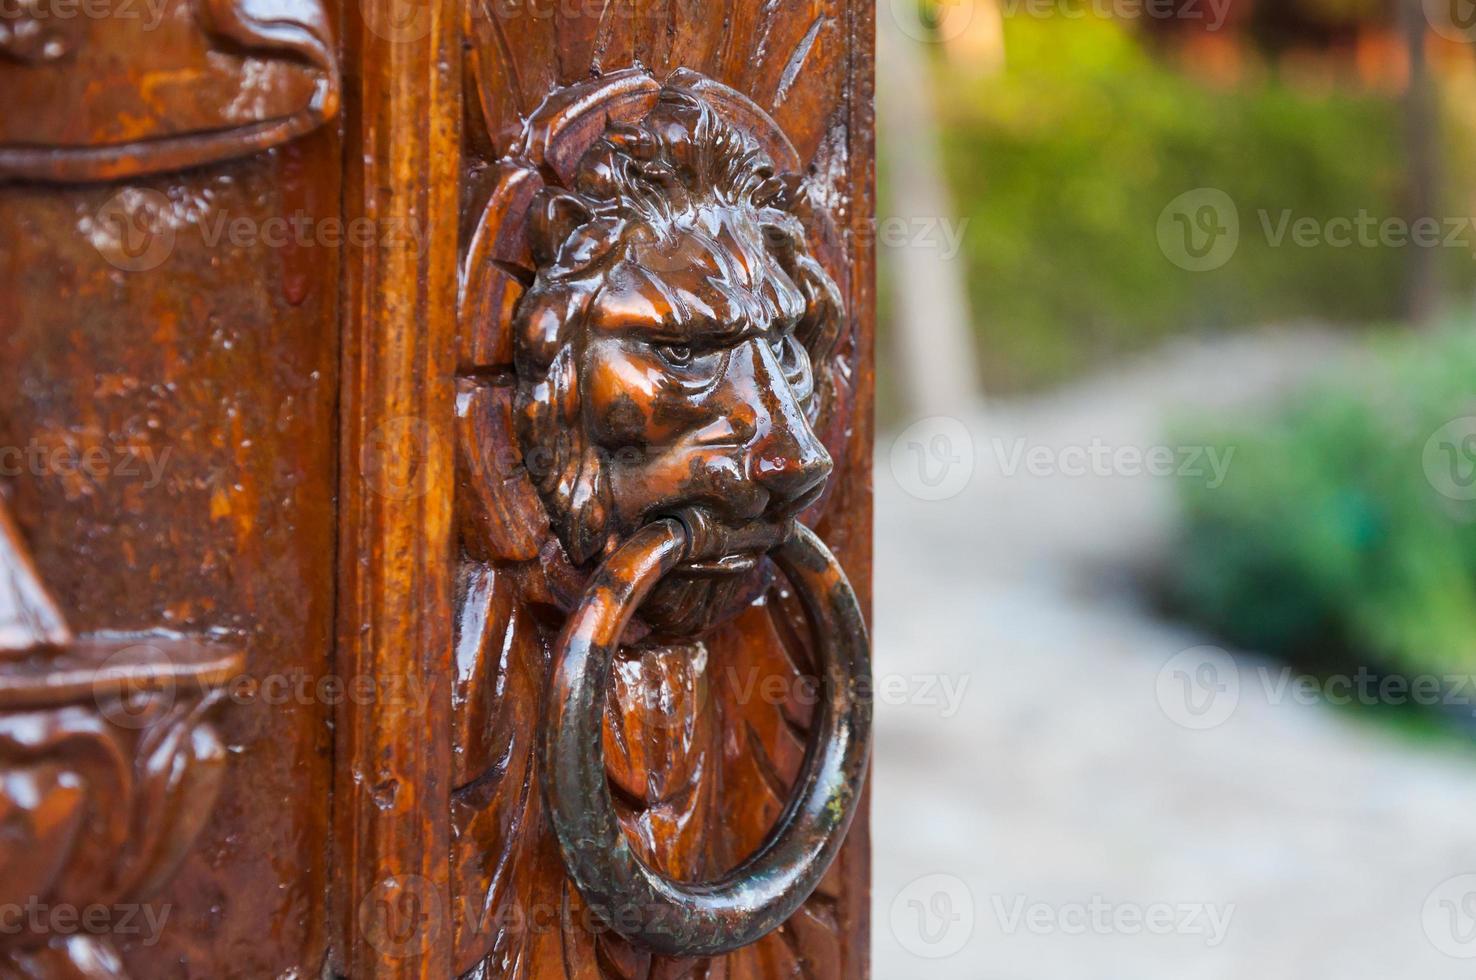 tradicional puerta aldaba en un esculpir de madera puerta, hierro hecho, demostración el cara de un león foto